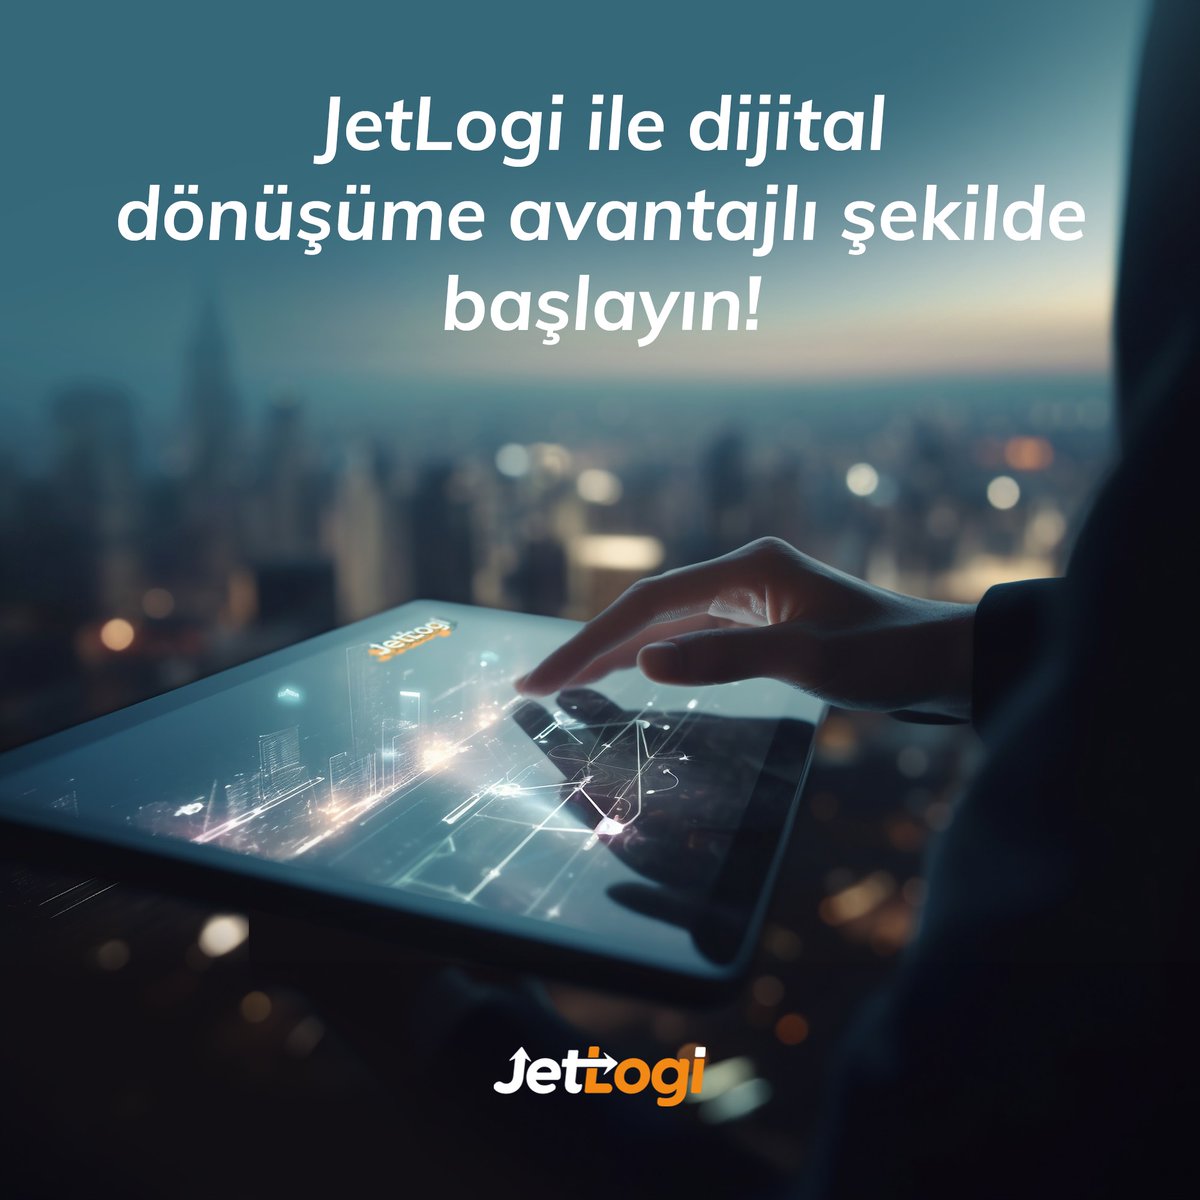 JetLogi ile dijital dönüşüme avantajlı şekilde başlayın!

#JetLogi #güvenliteslimat #jethızında #teslimat #gönderi #hızlı #güvenilir #güvenli #müşterimemnuniyeti #randevu #müşterimemnuniyeti #dijital #dijitaldönüşüm